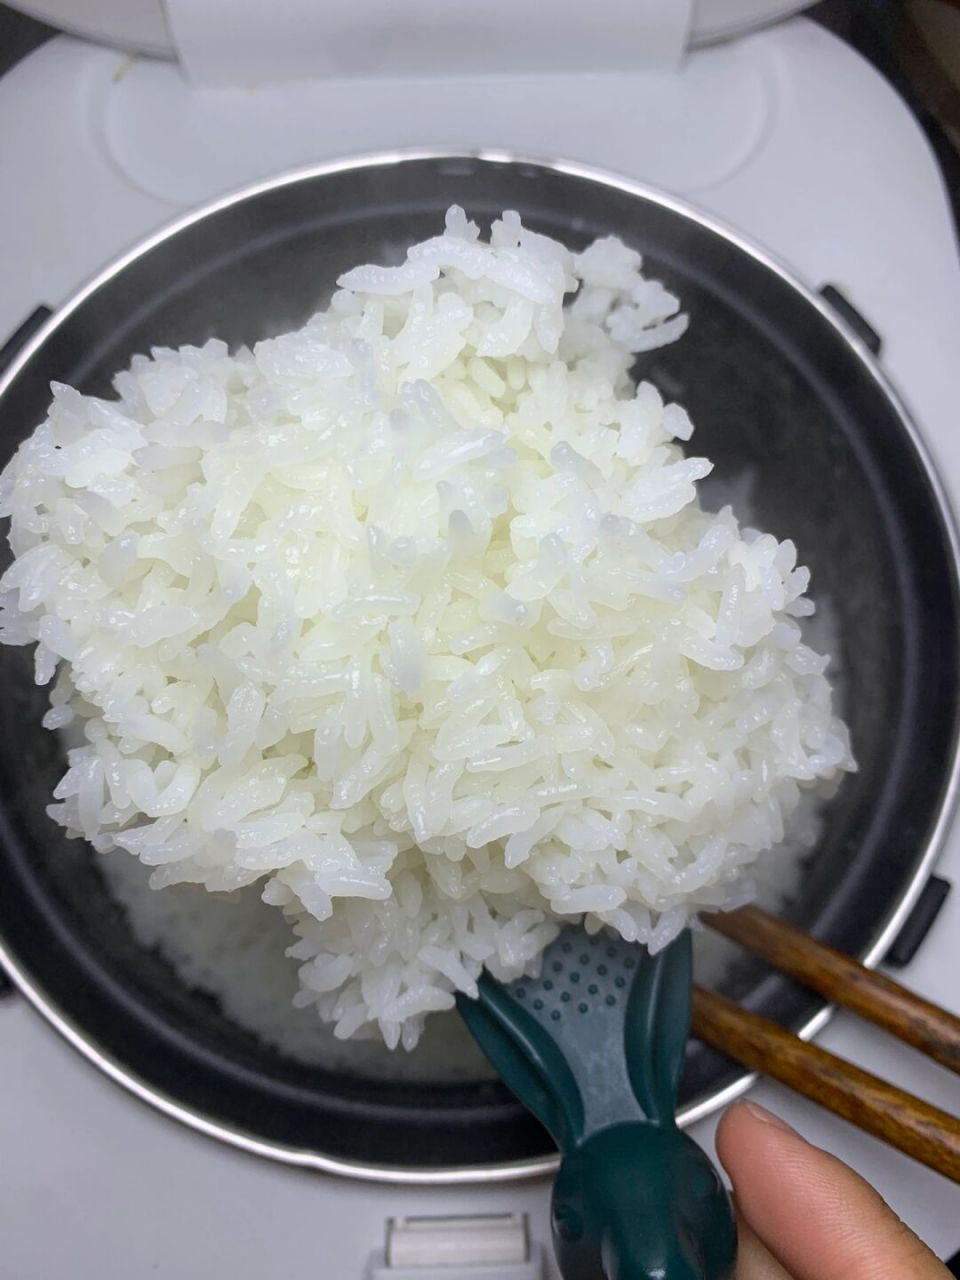 米饭图片大全 真实图片